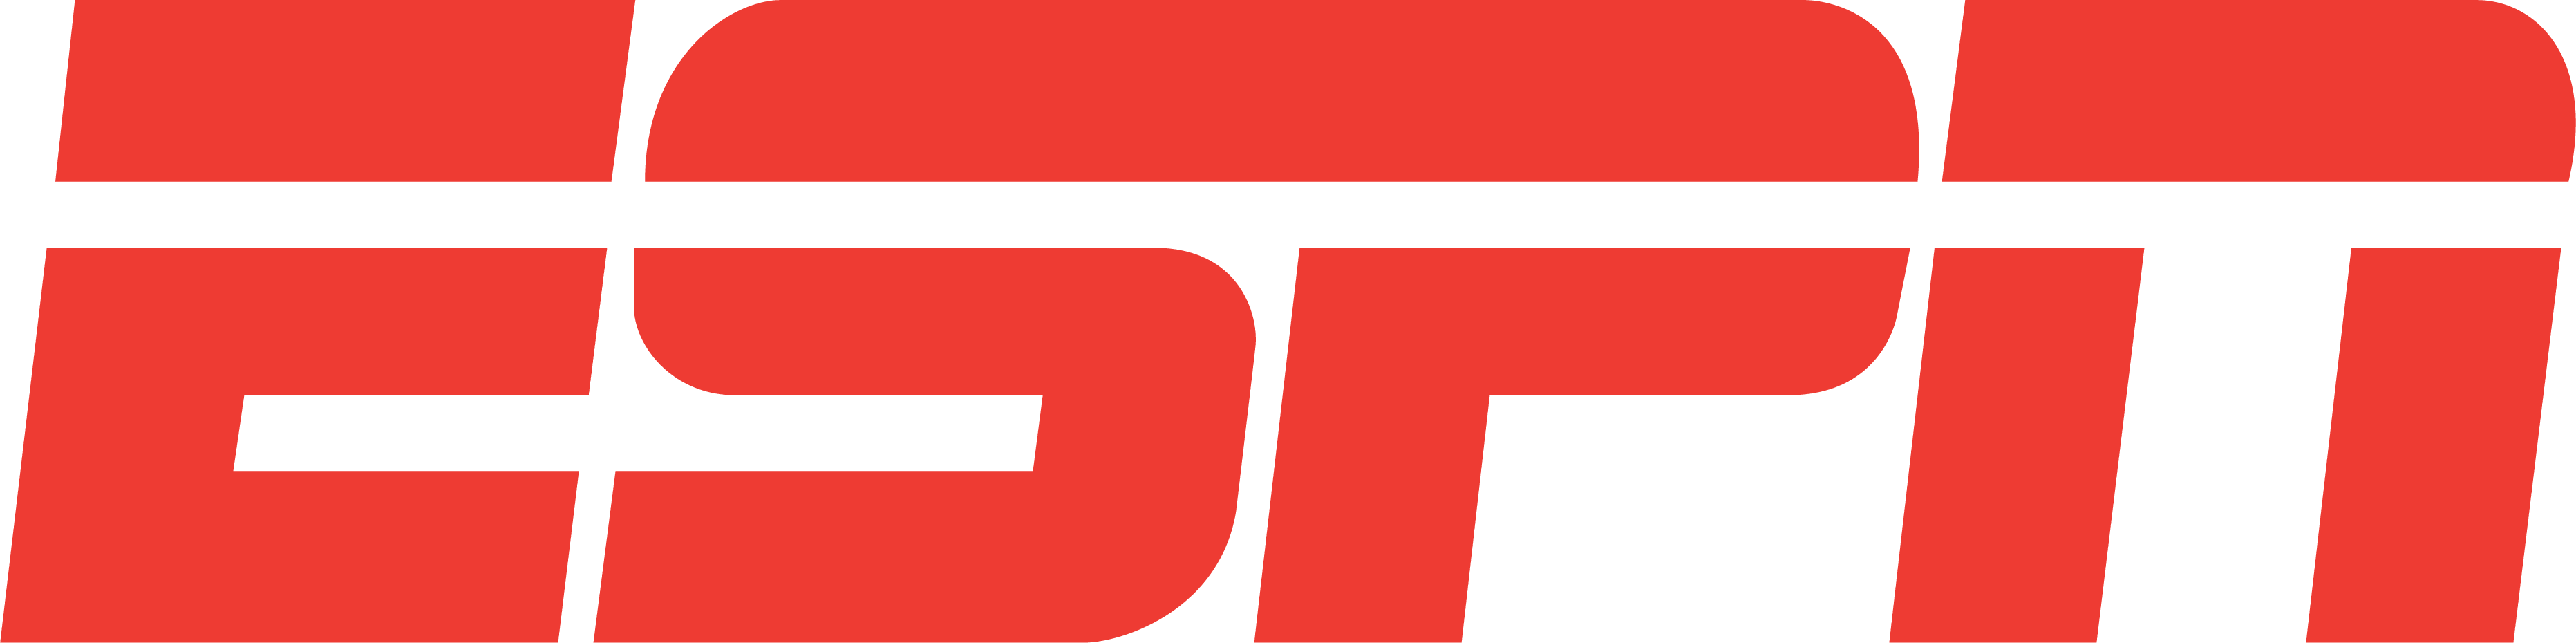 Empower Leadership Clients - ESPN